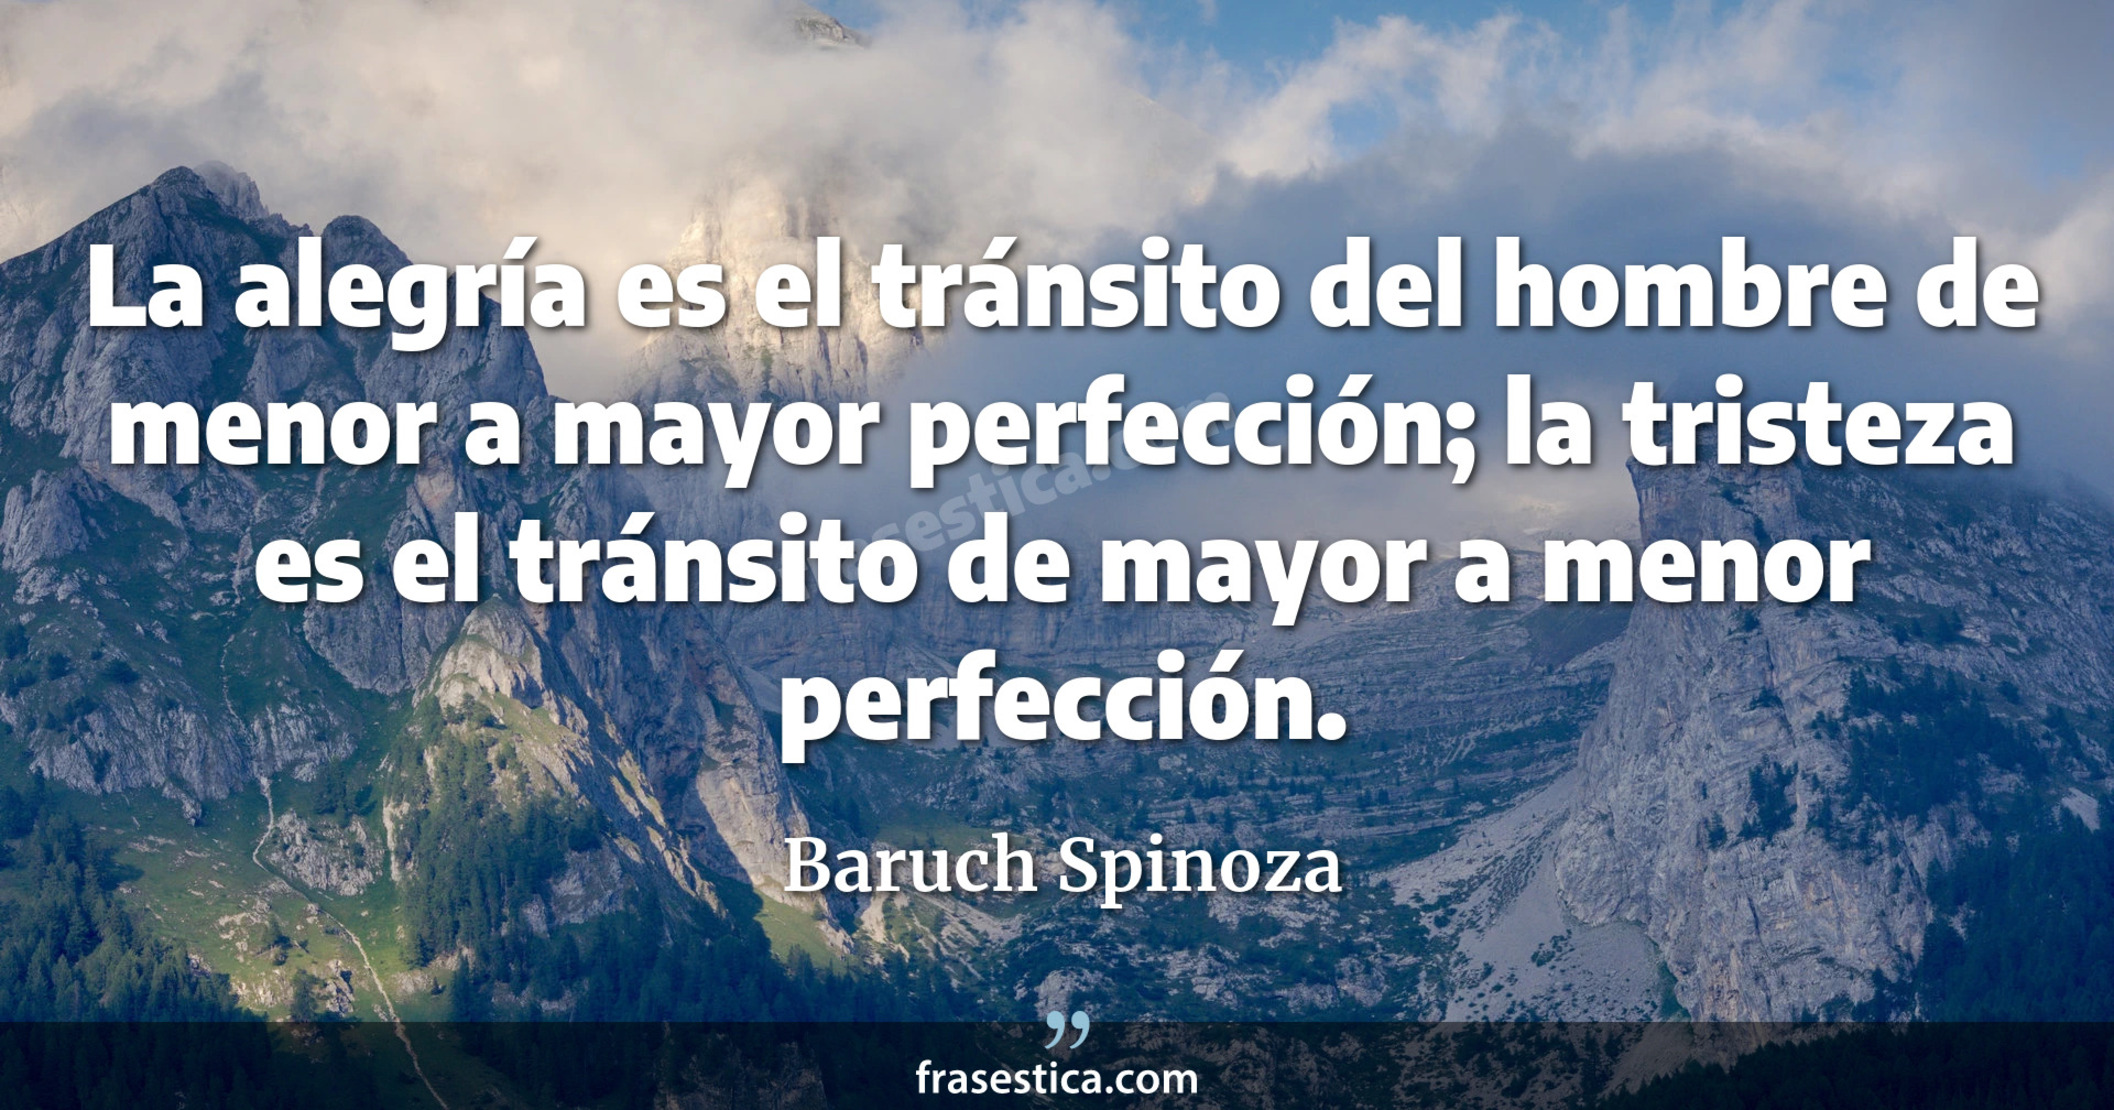 La alegría es el tránsito del hombre de menor a mayor perfección; la tristeza es el tránsito de mayor a menor perfección. - Baruch Spinoza